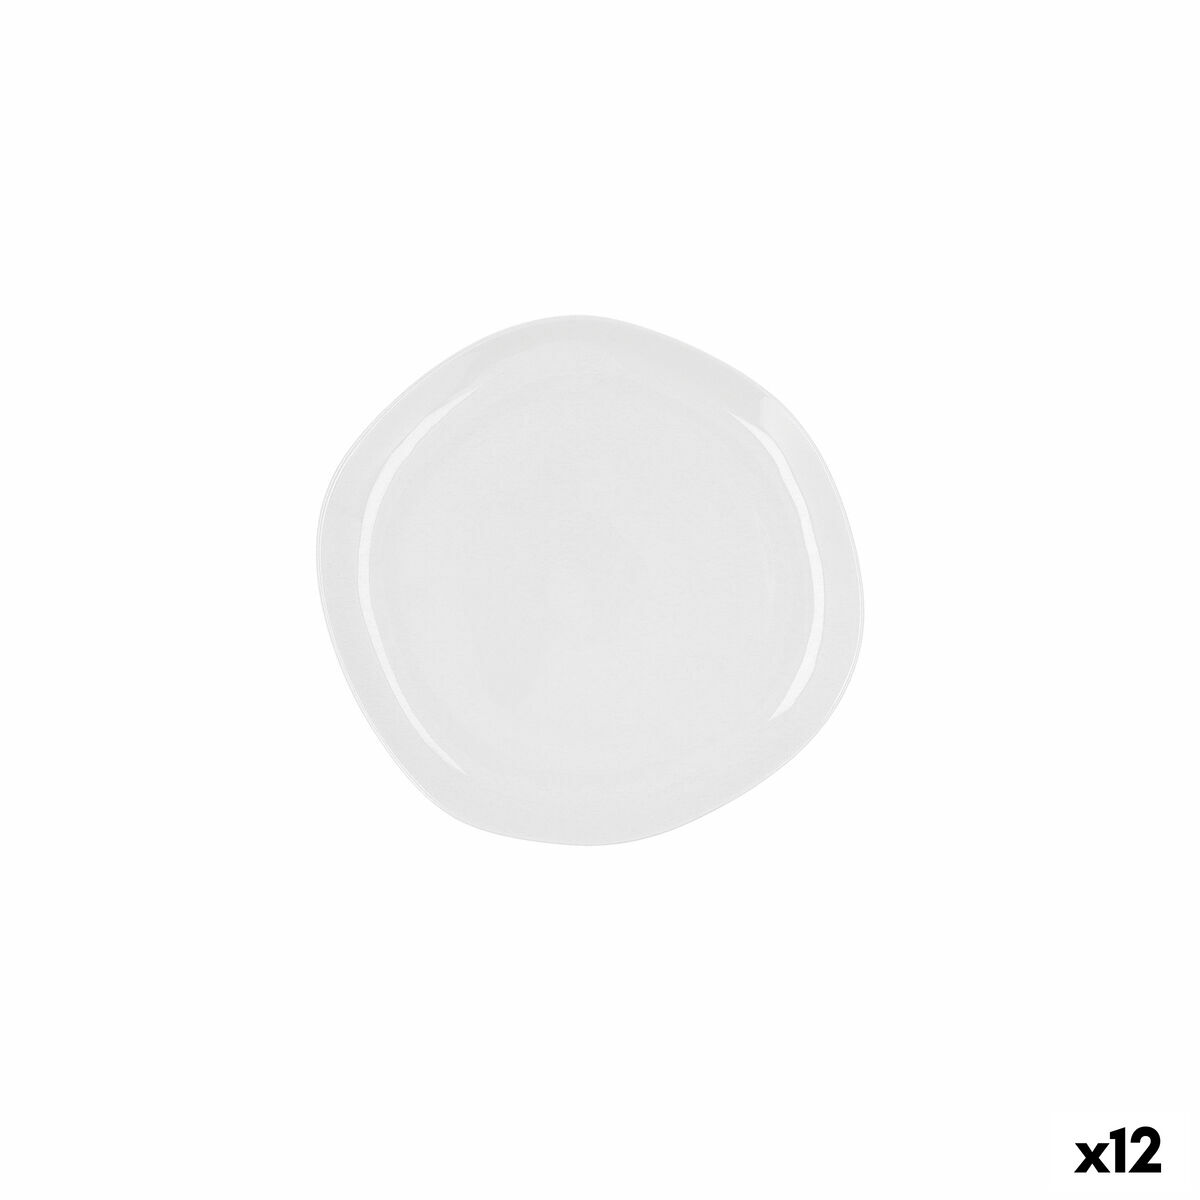 Piatto da pranzo Ariane Earth Bianco Ceramica Ø 21 cm (12 Unità)